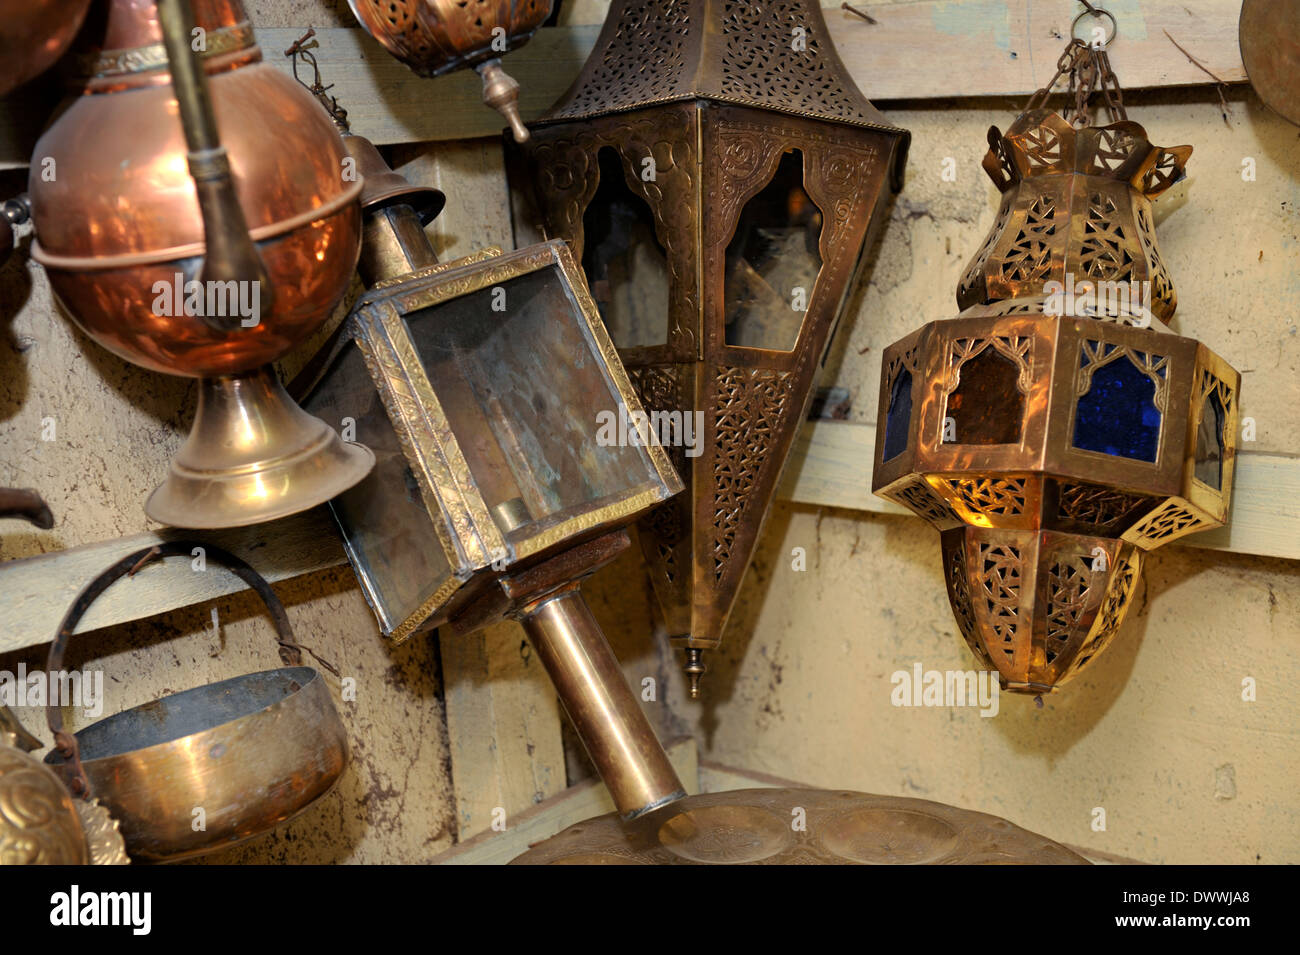 Lavoro di metallo, teiere, lampade e vasi nel souk di Marrakech, Marocco, Africa del Nord Foto Stock